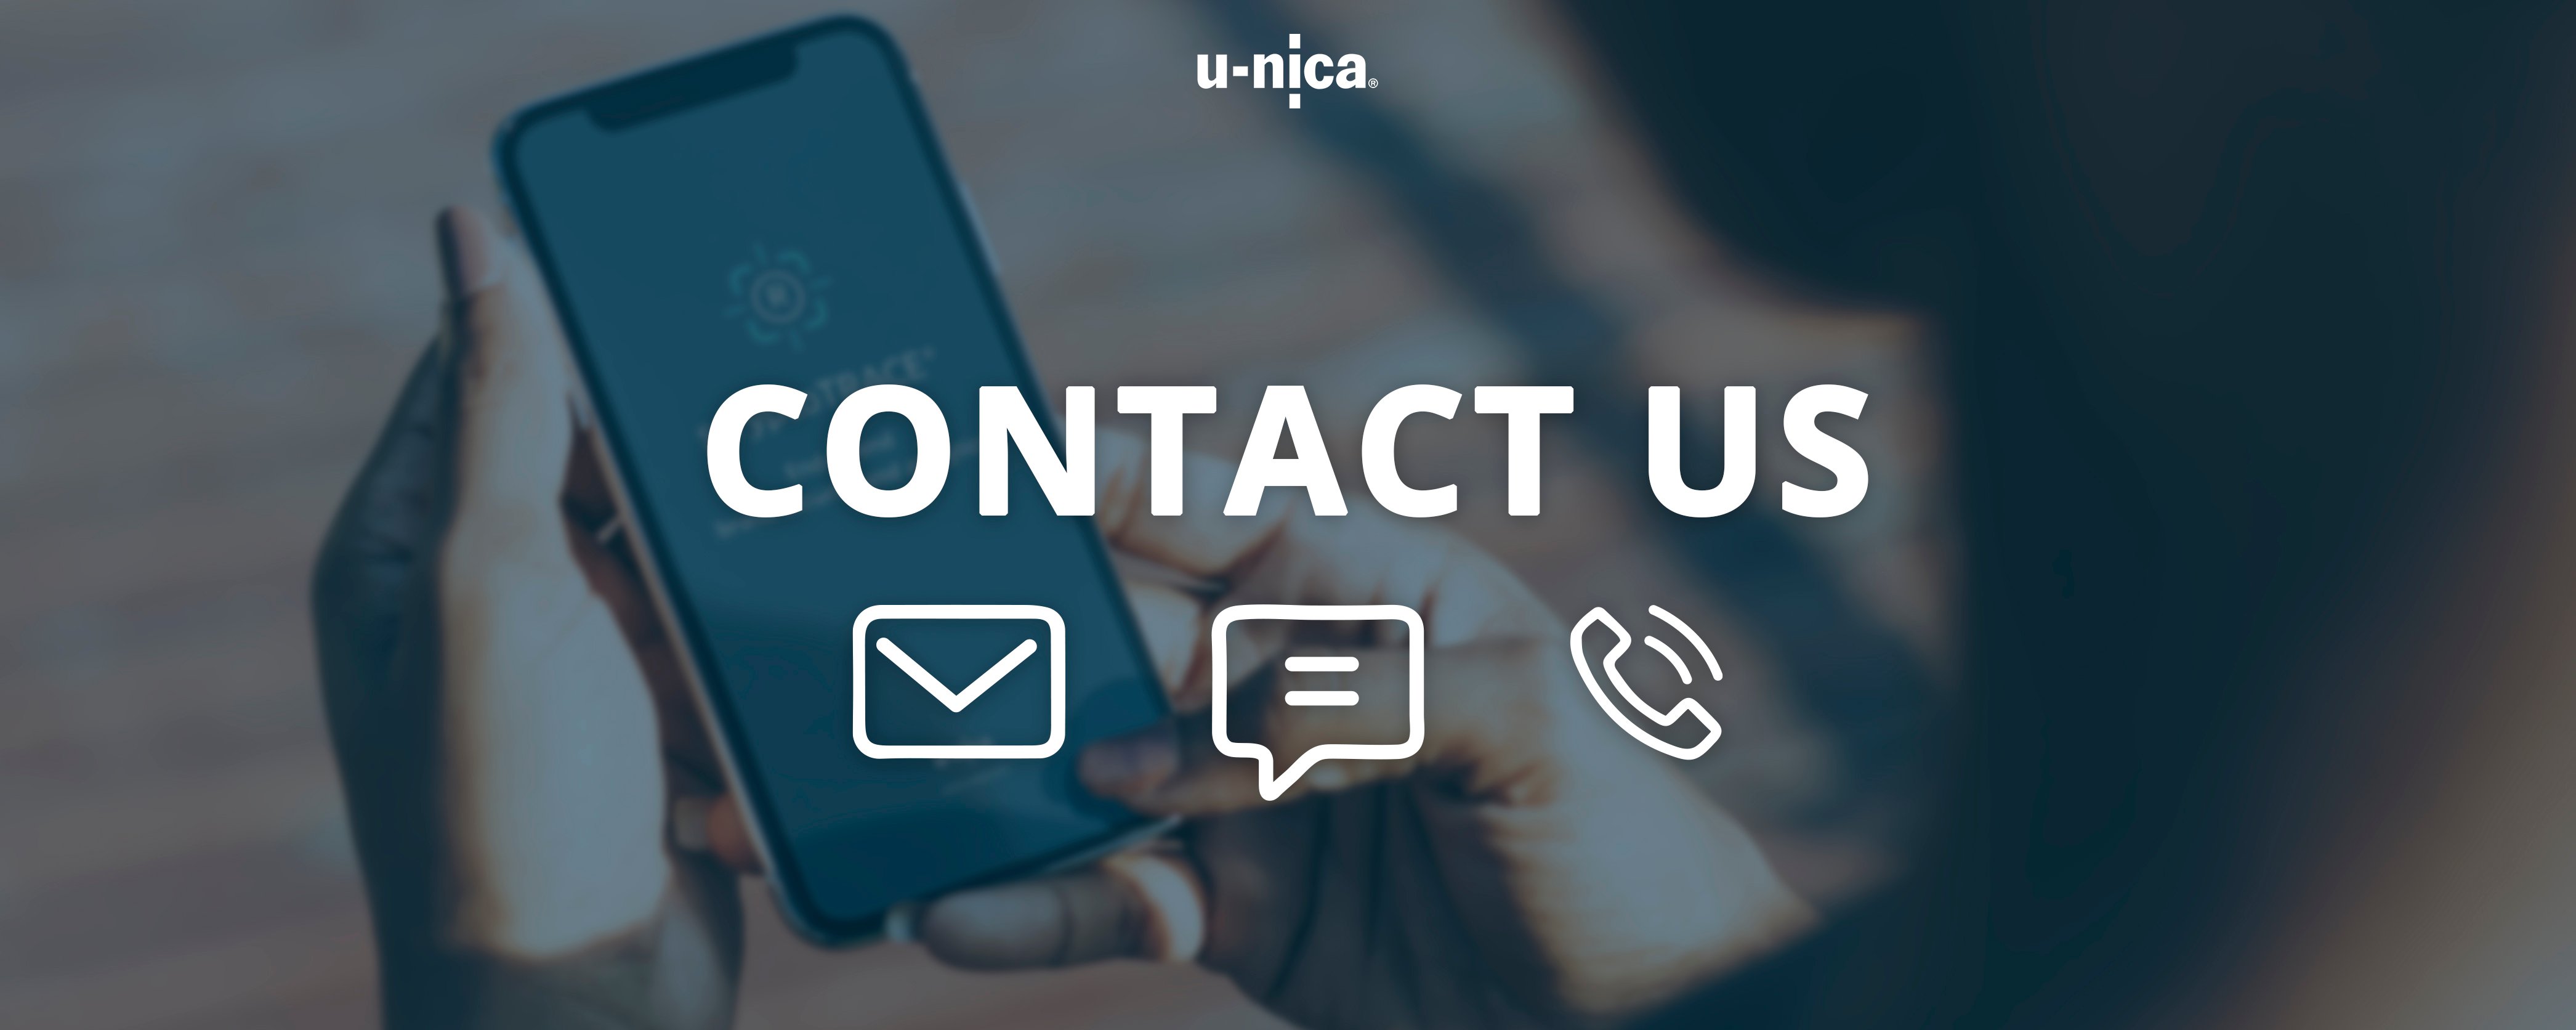 Contact us at U-NICA